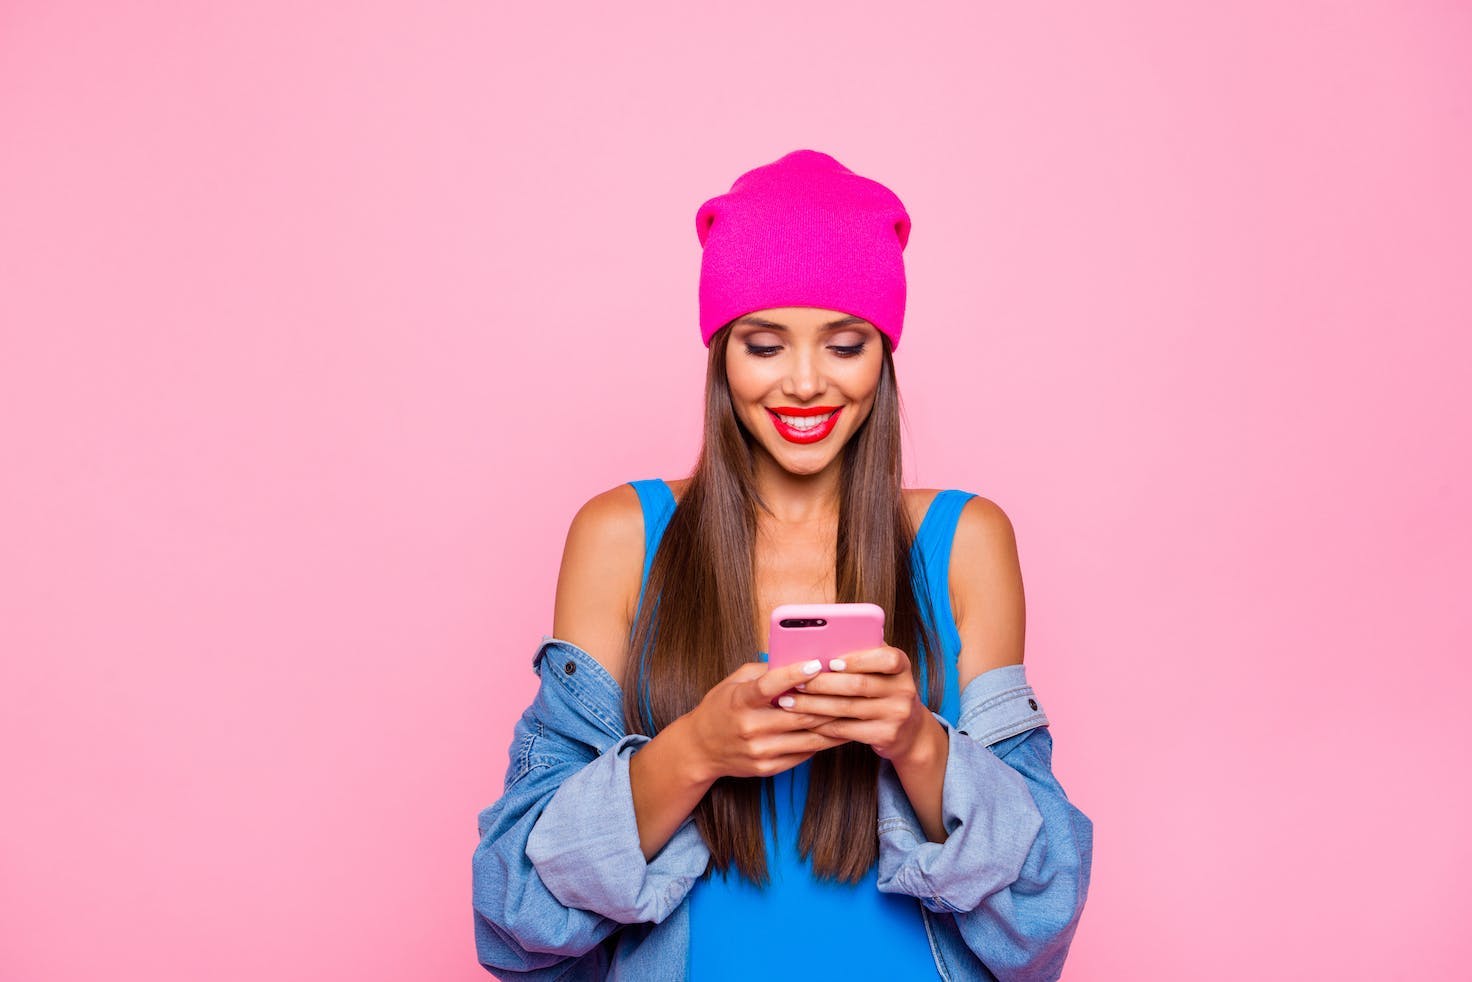 Photo d'une jeune femme qui porte un bonnet rose, un débardeur bleu, une chemise bleue, sourit en regardant son smartphone. Elle se tient contre un mur rose. 